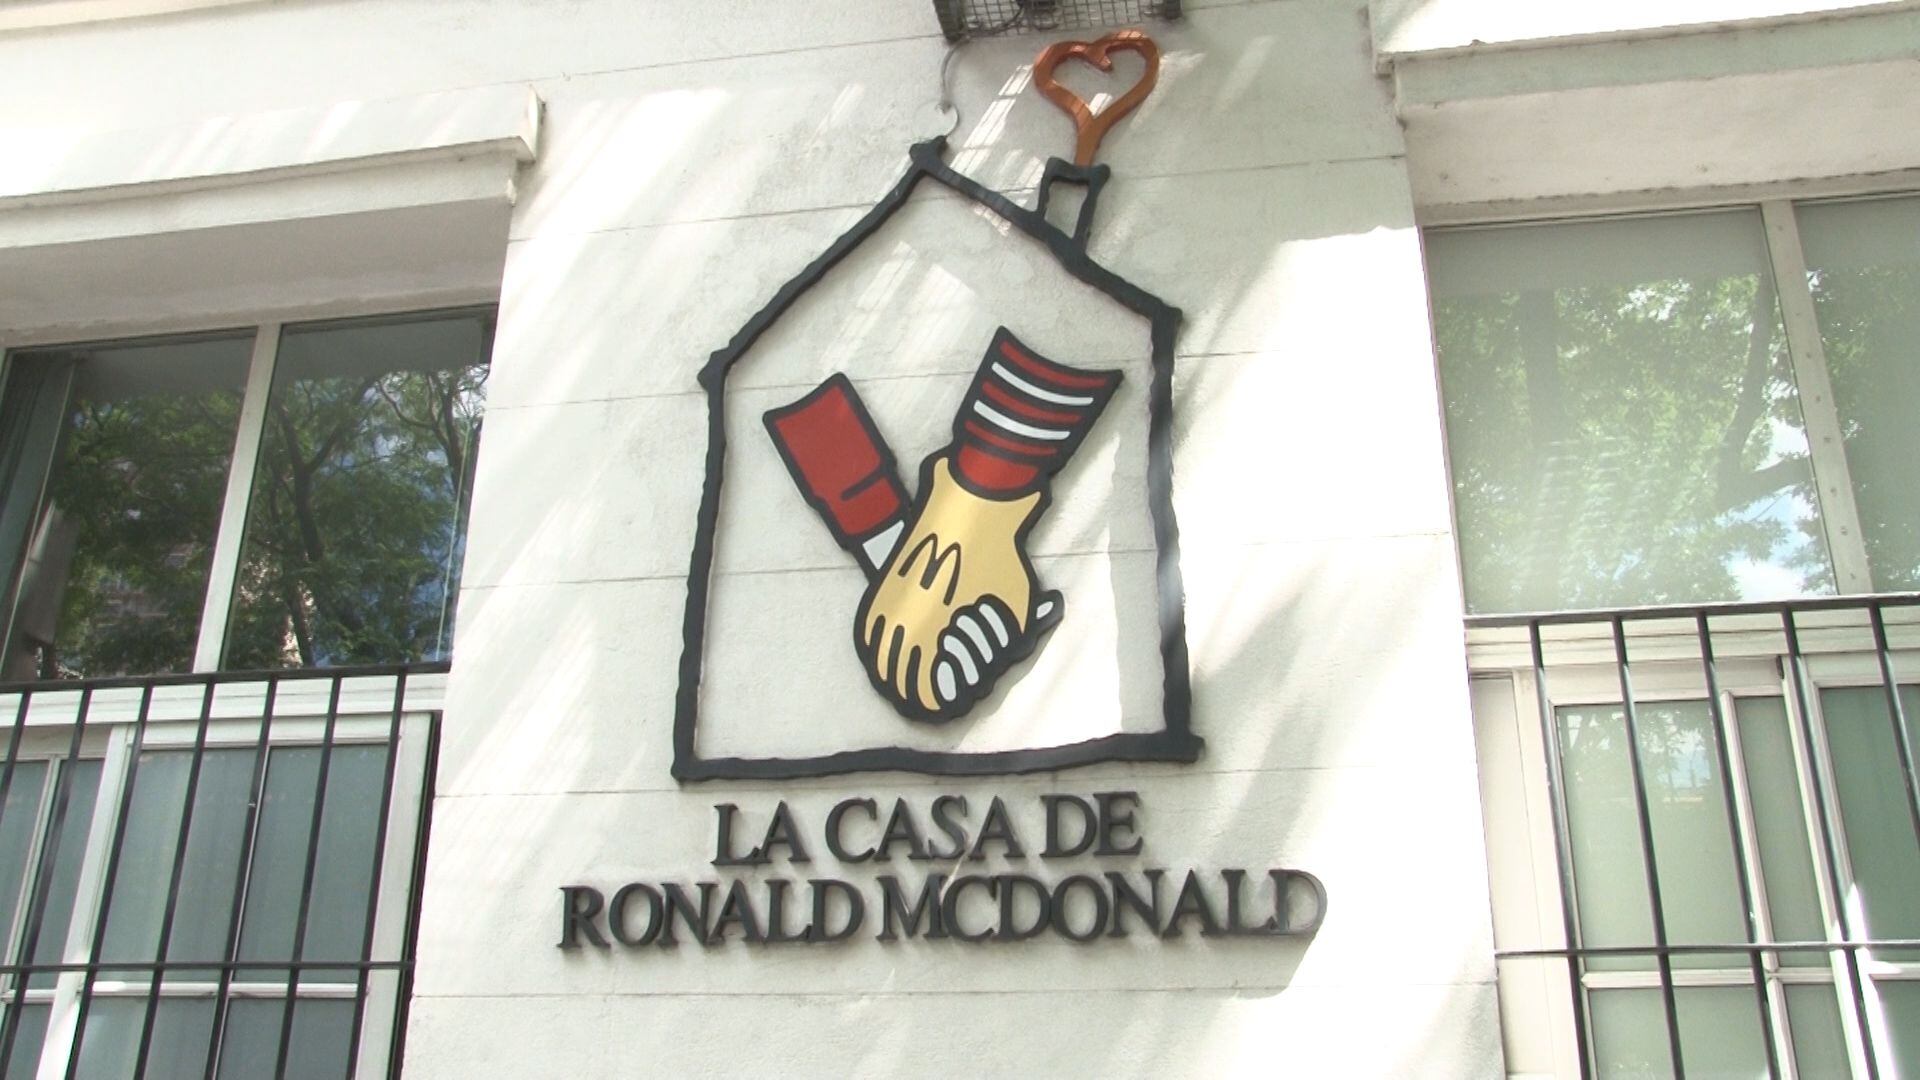 La Casa Ronald Mc Donald está ubicada en el barrio porteño de Almagro y posee 30 habitaciones para 4 personas cada una